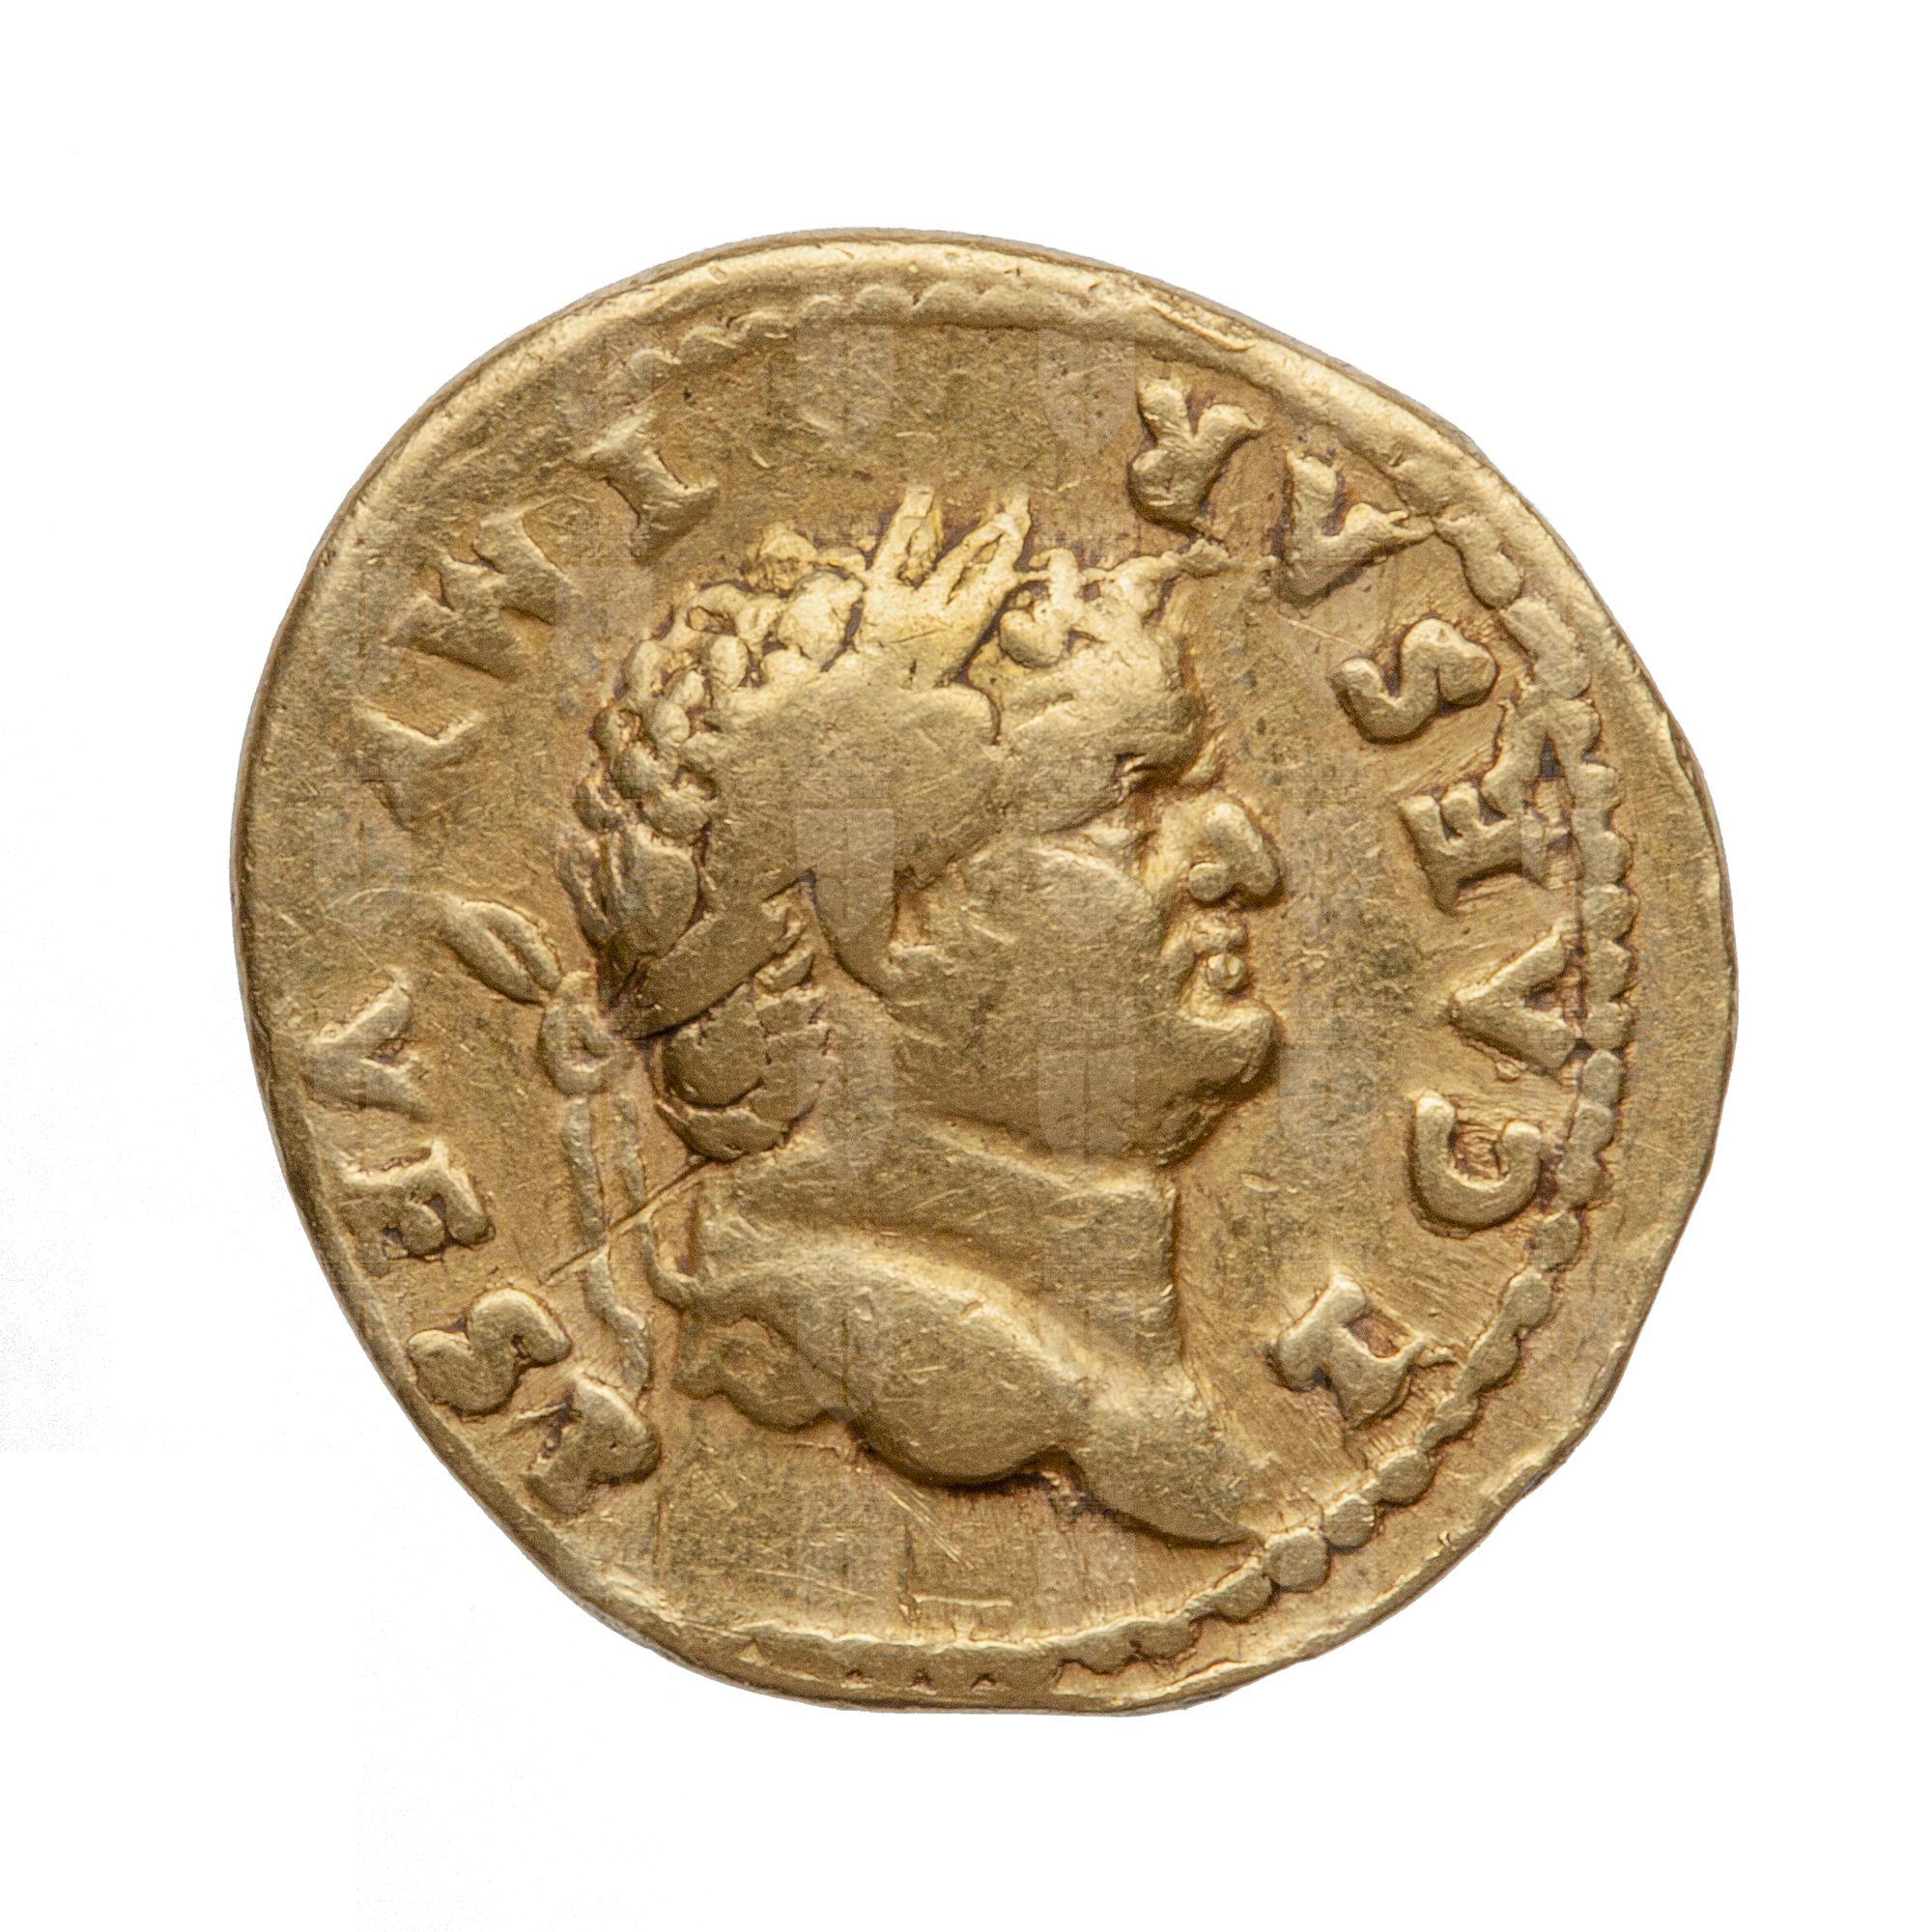 https://catalogomusei.comune.trieste.it/samira/resource/image/reperti-archeologici/Roma 760 D Tito.jpg?token=6514fbb7d767c